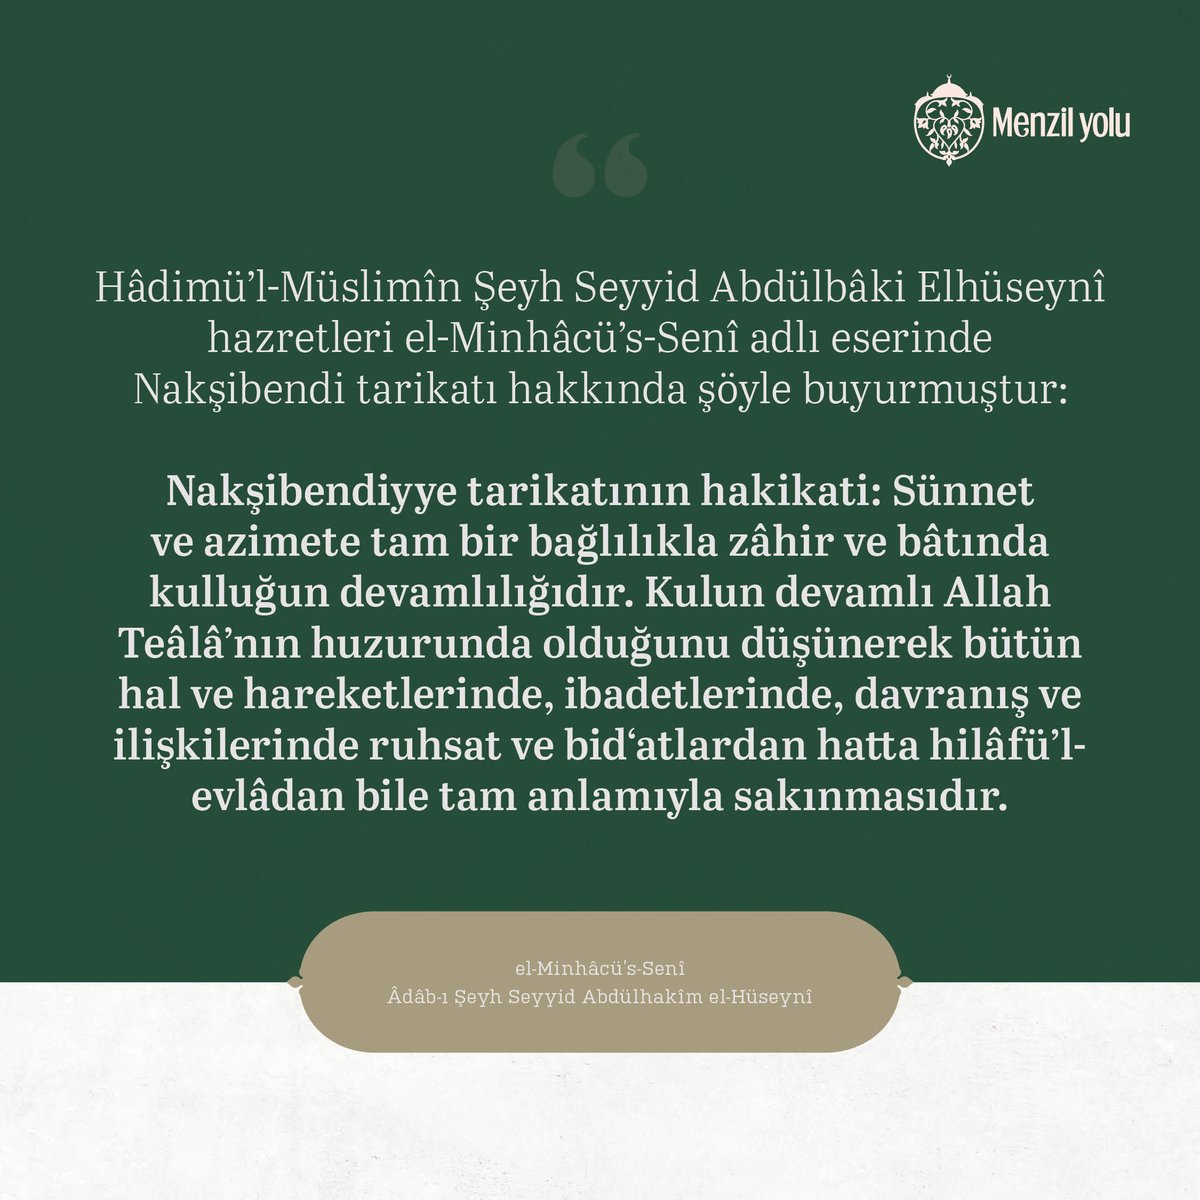 Hadimü’l-Müslimin Şeyh Seyyid Abdulbaki Elhüseyni hazretleri El-Minhacu’s-Seni adlı eserinde Nakşibendi tarikatı hakkında şöyle buyurmuştur: